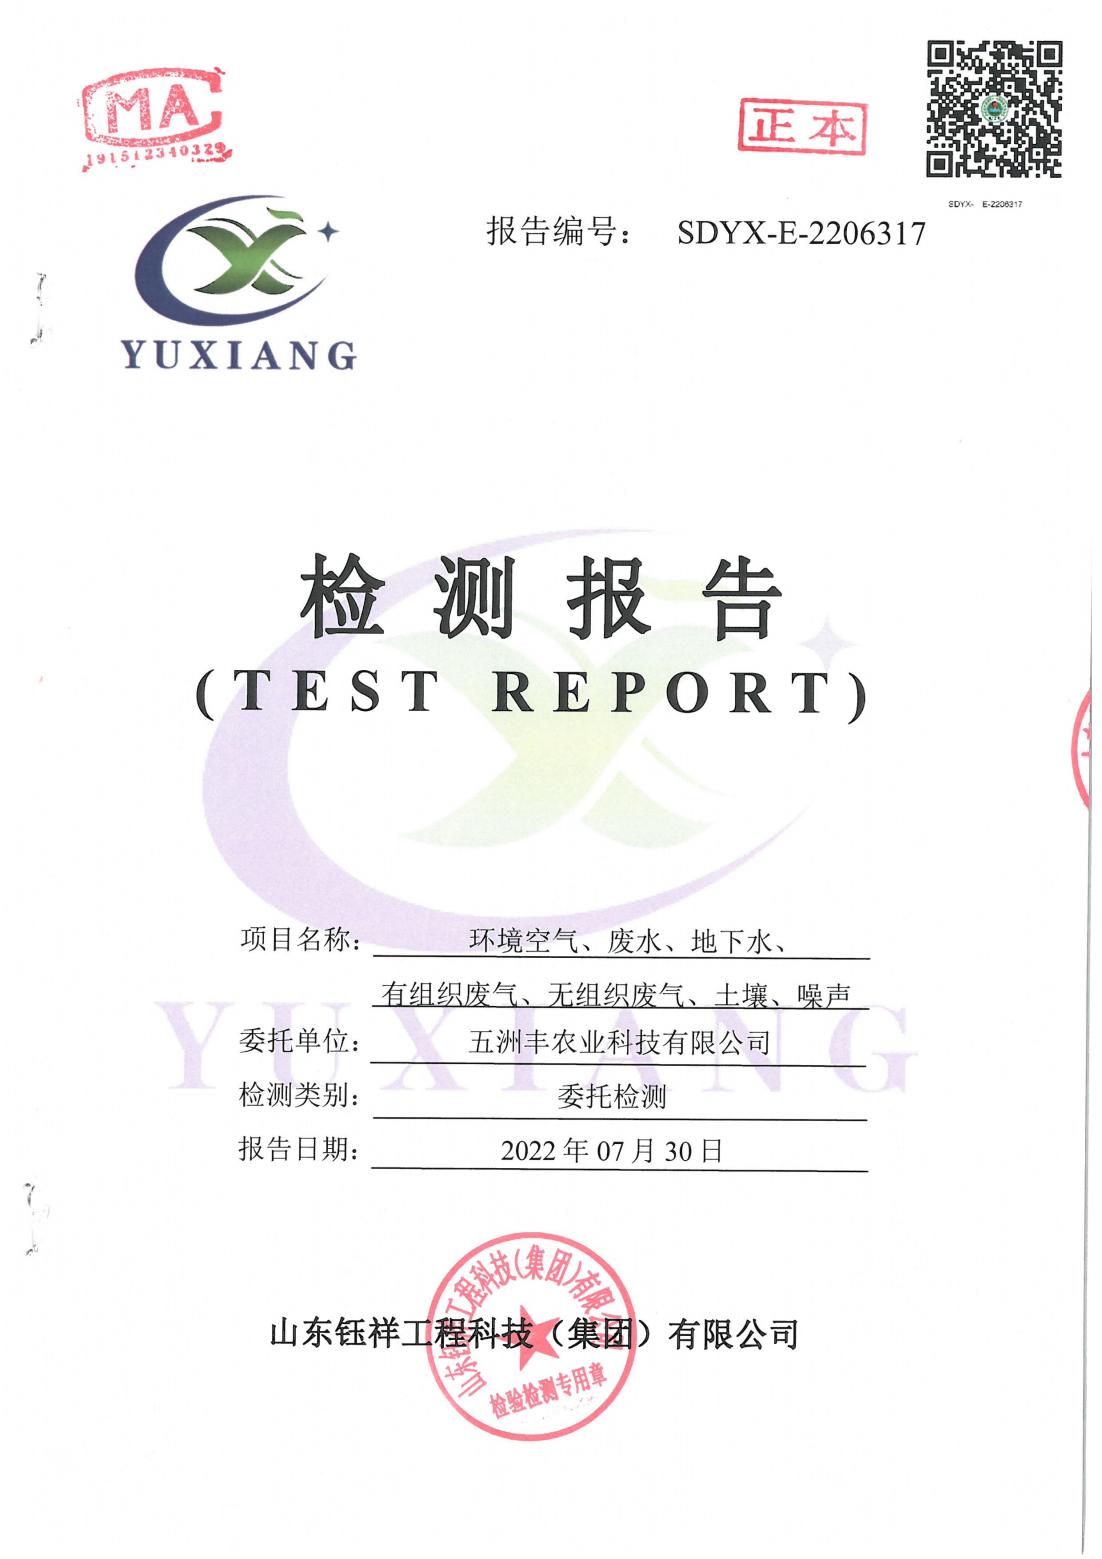 五洲丰台湾佬中文网站有限公司环境空气、废水、地下水、废气、土壤、噪声检测报告。